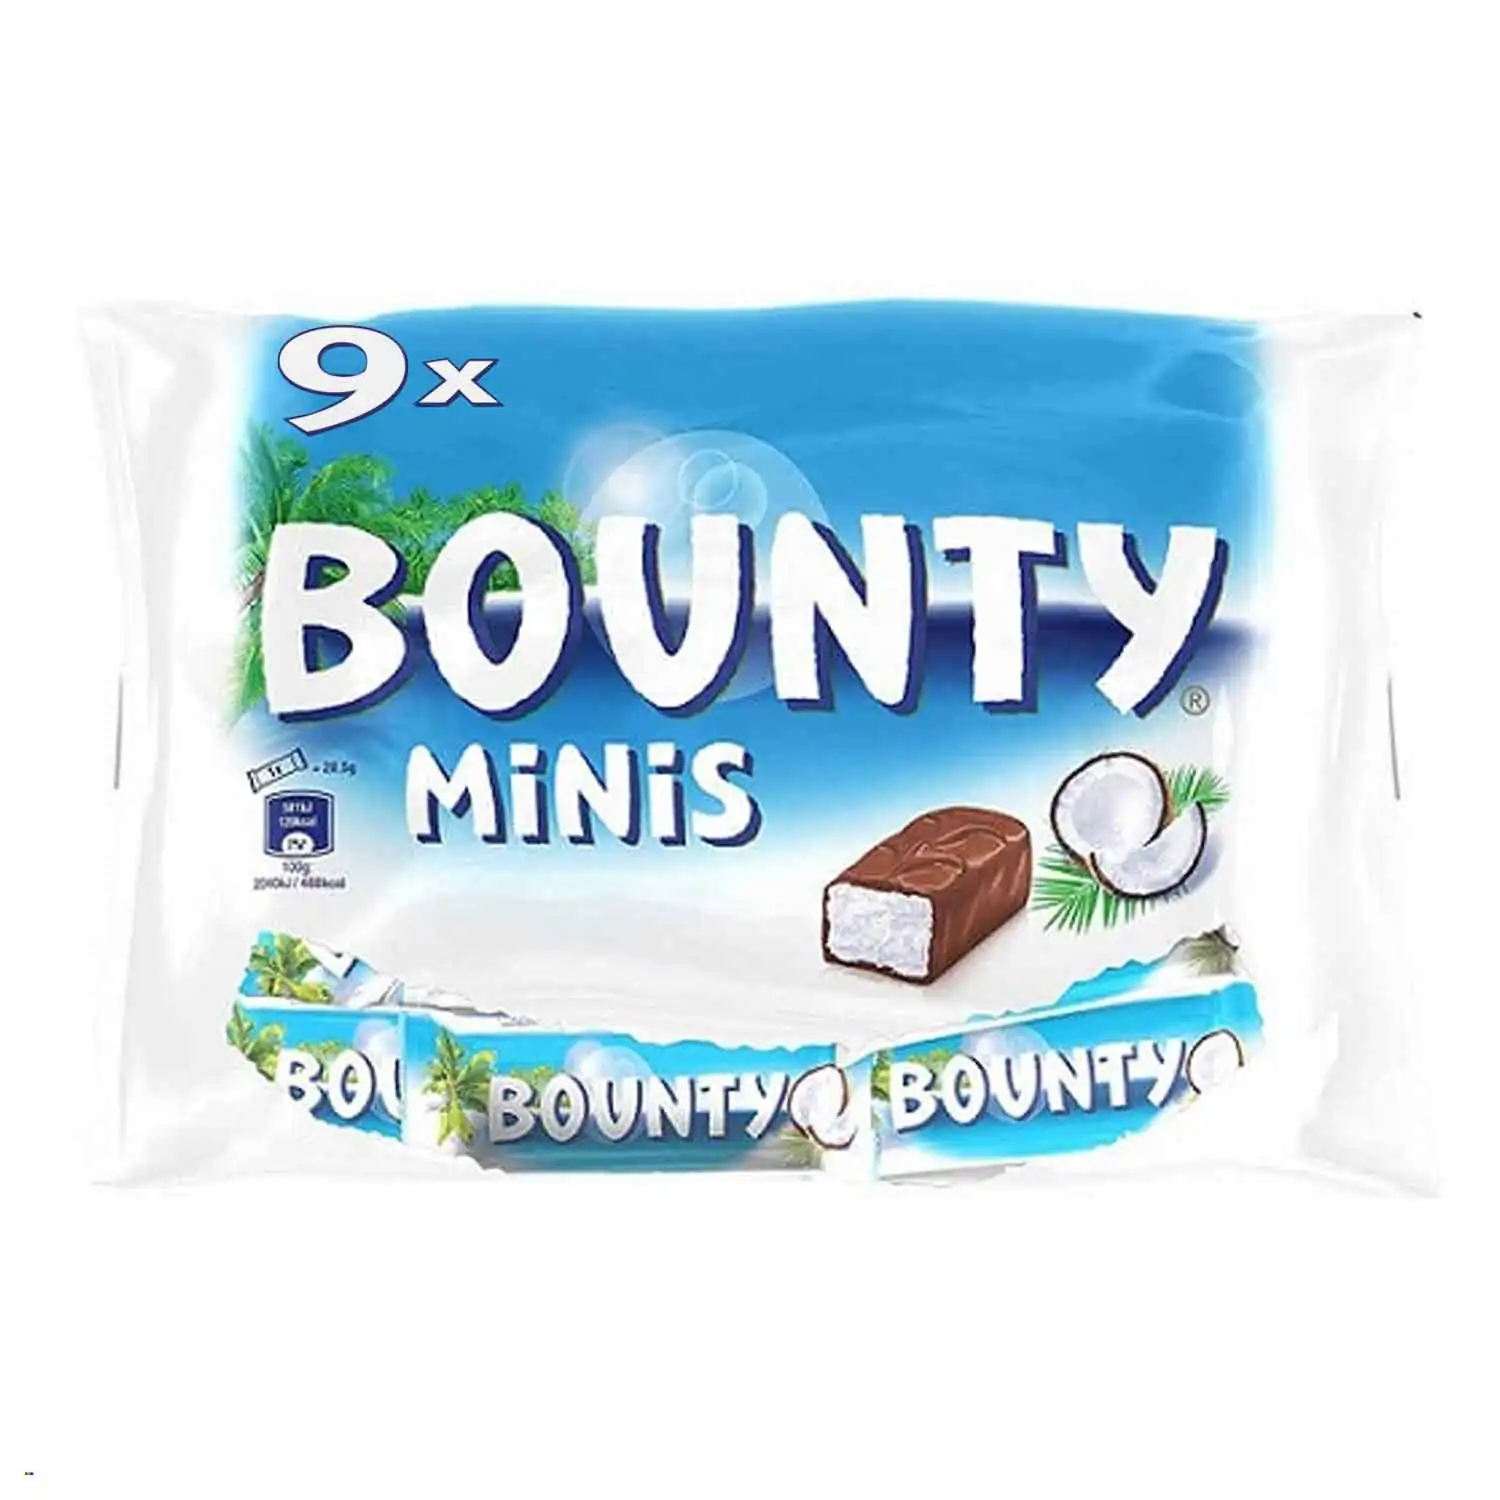 Bounty minis 275g - Buy at Real Tobacco